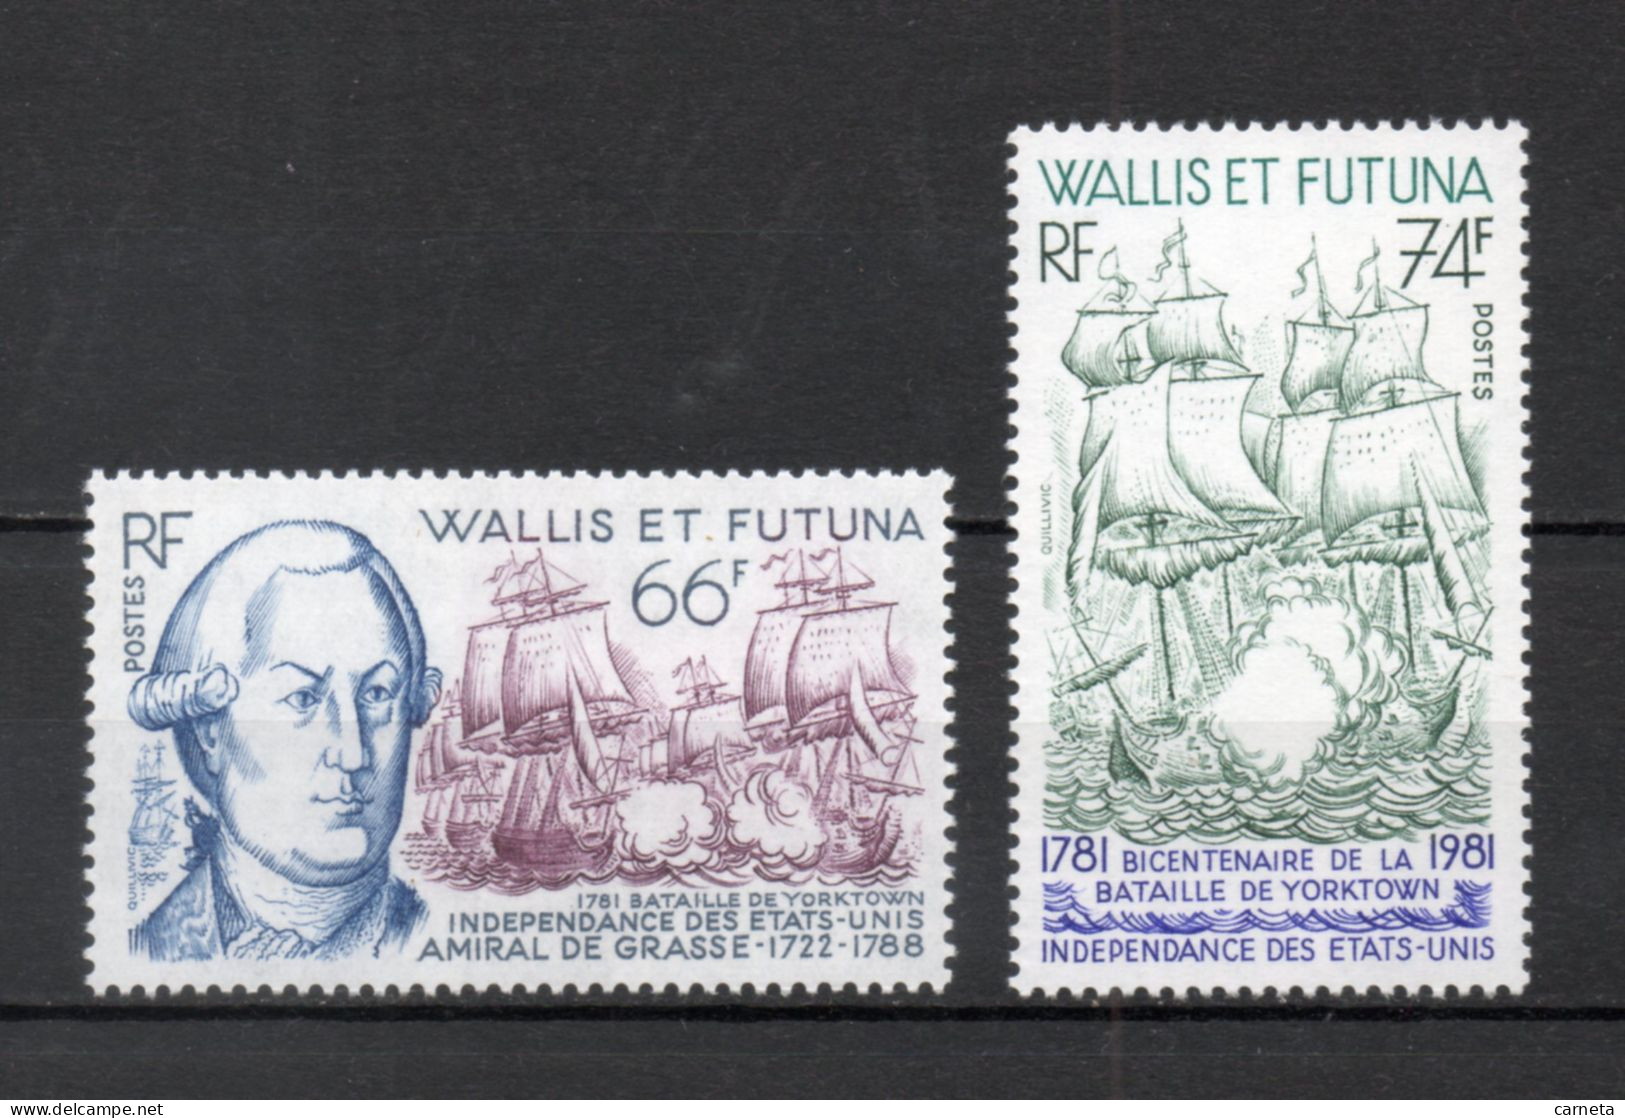 WALLIS ET FUTUNA N° 277 + 278   NEUFS SANS CHARNIERE COTE 6.15€   BATEAUX BATAILLE GUERRE - Unused Stamps